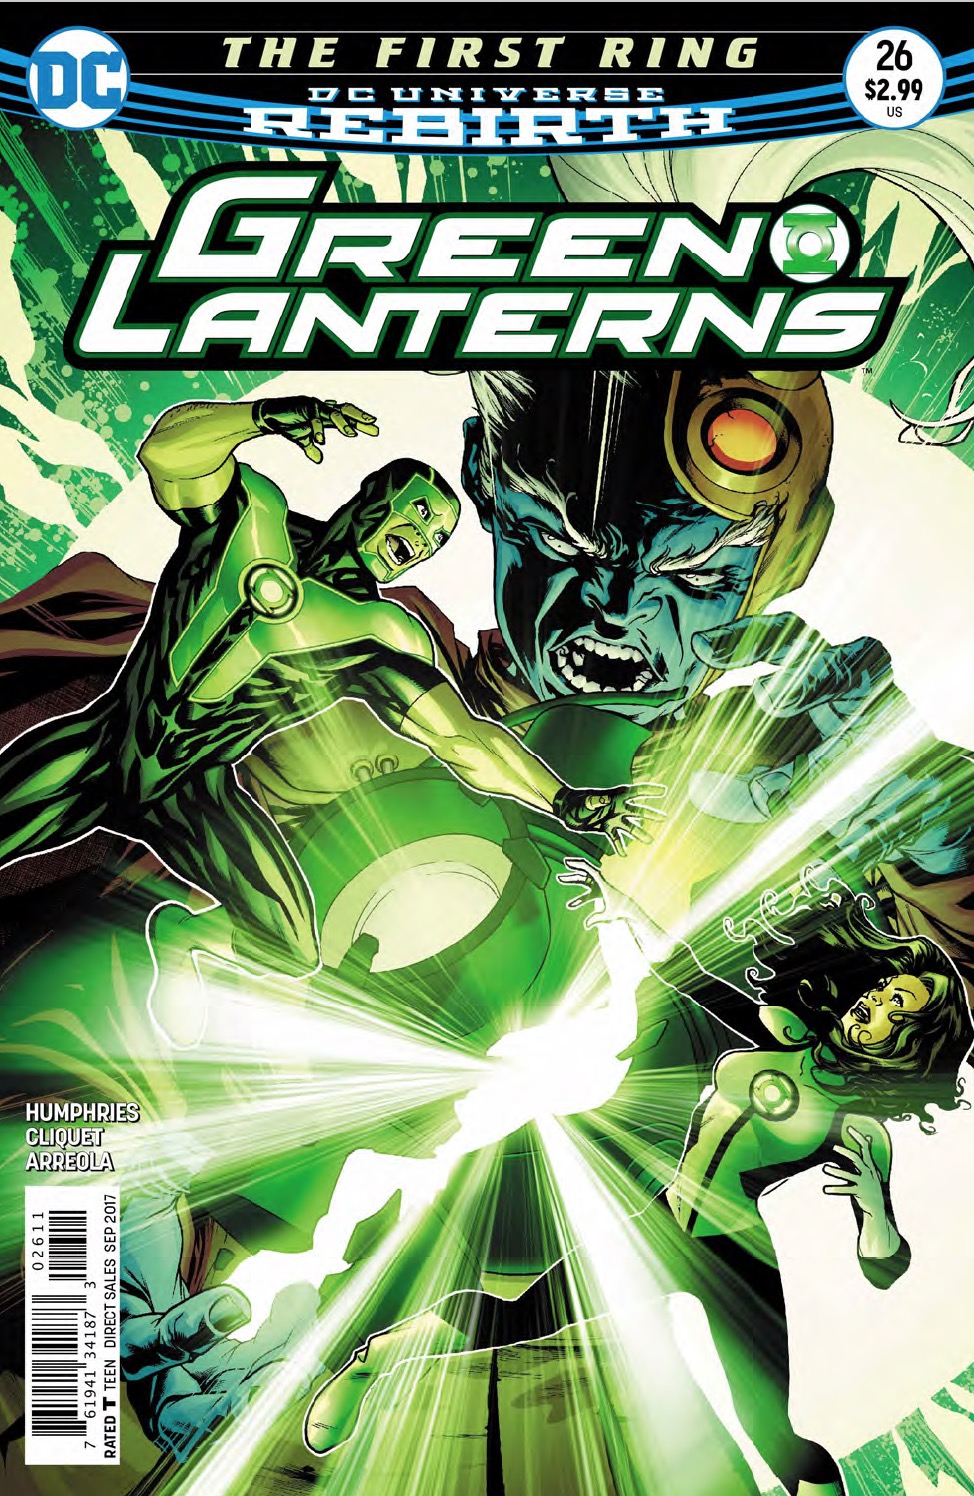 Green Lanterns #26 Review